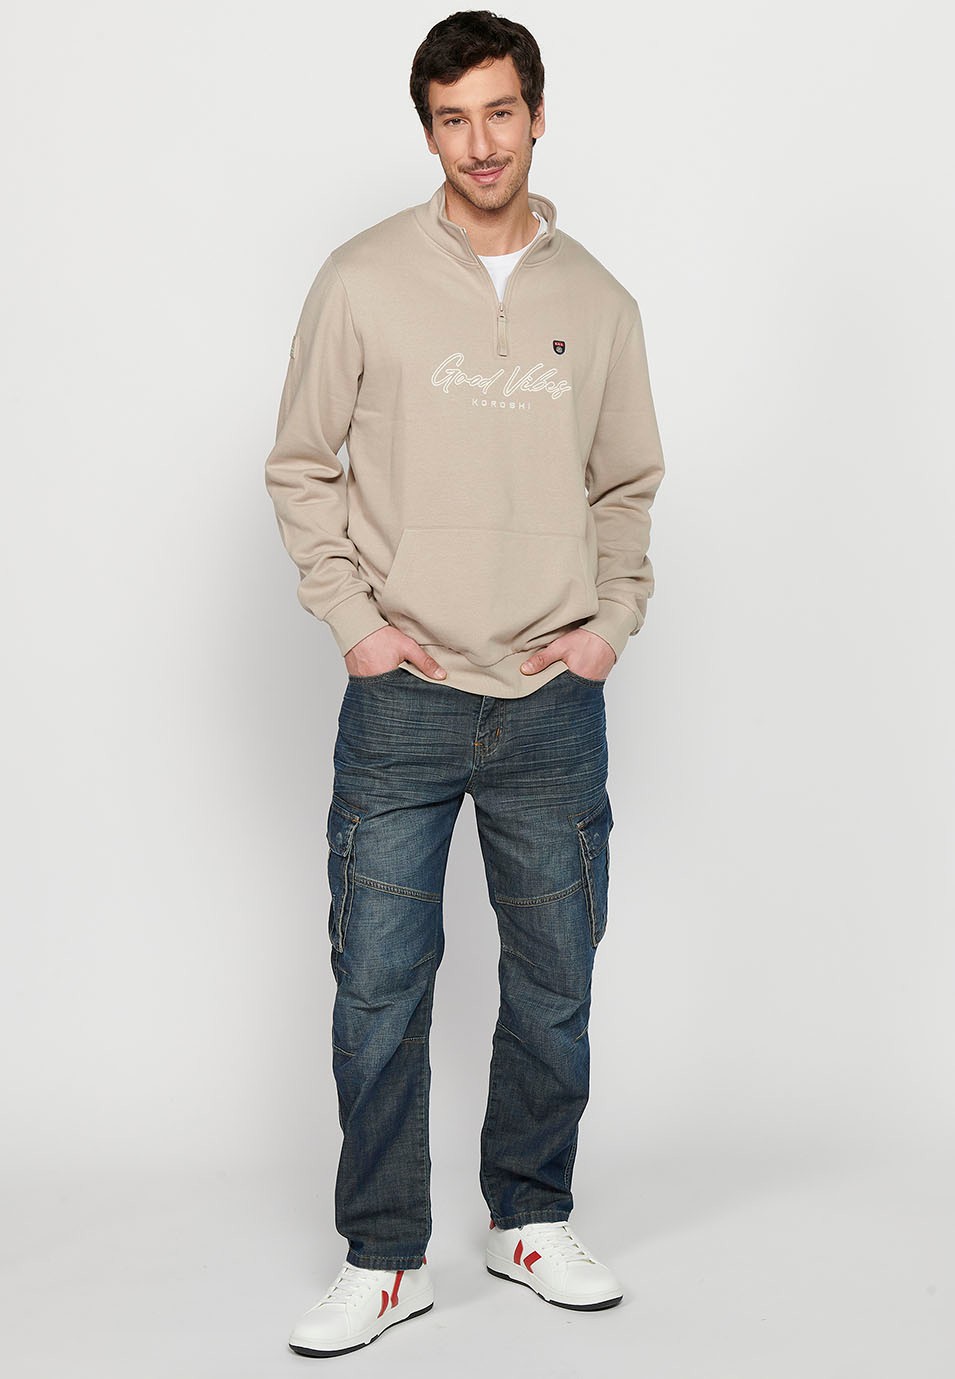 Herren-Sweatshirt mit Stehkragen, steinfarben, vorne, Reißverschluss, langärmlig